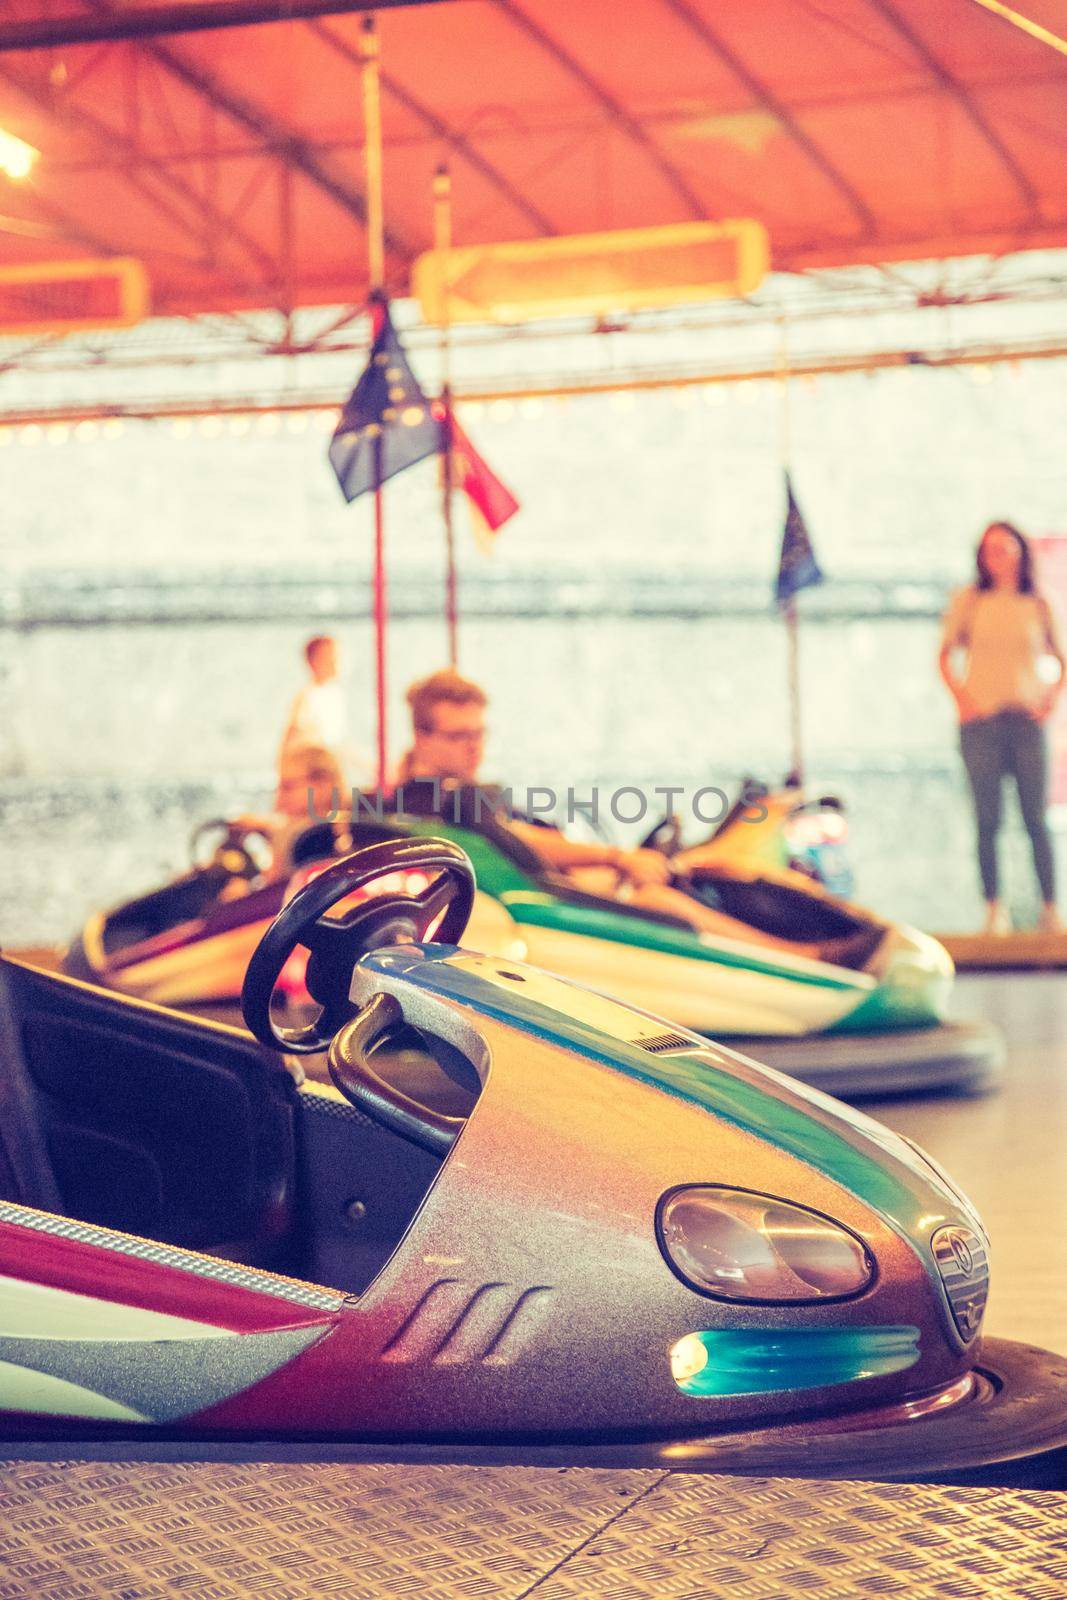 Bumper car at Oktoberfest: Colorful electric bumper car in autodrom by Daxenbichler